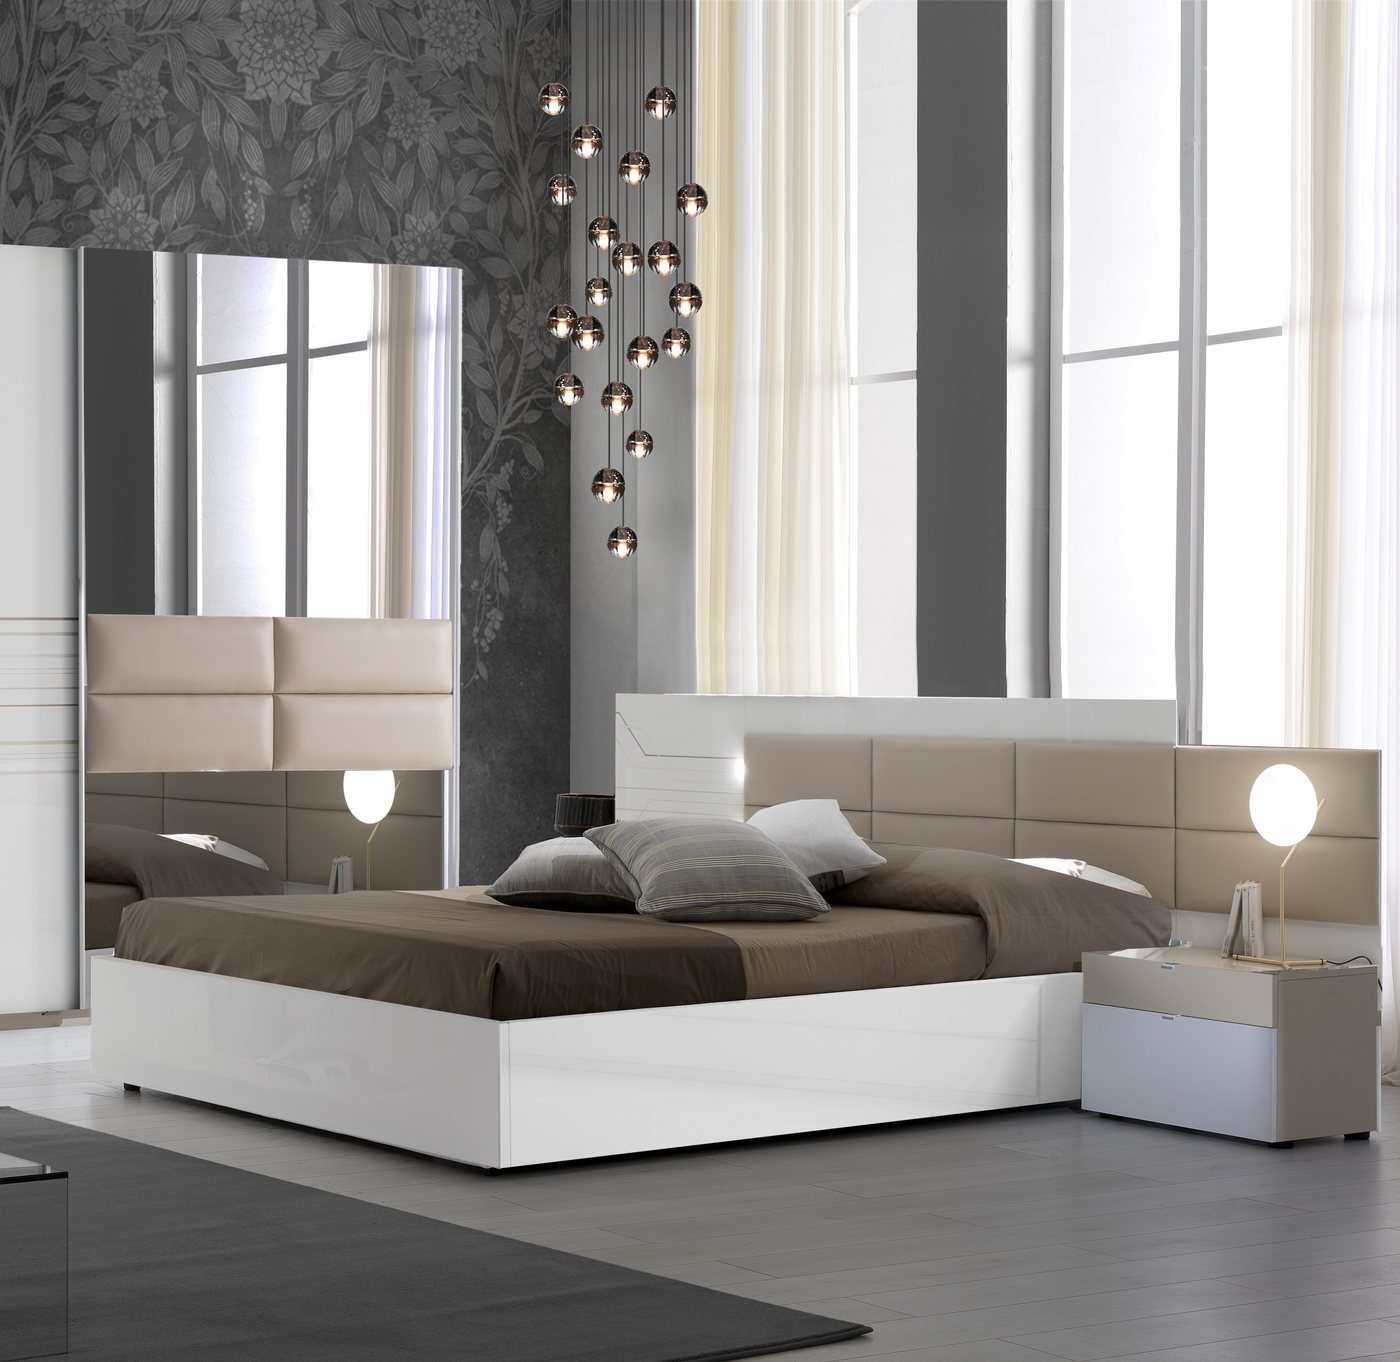 Interdesign24 Bettanlage Luana, (bestehend aus Bett in versch. Größen und 2 Nachtkommoden, inkl. Lattenrost), in Weiß/Beige von Interdesign24